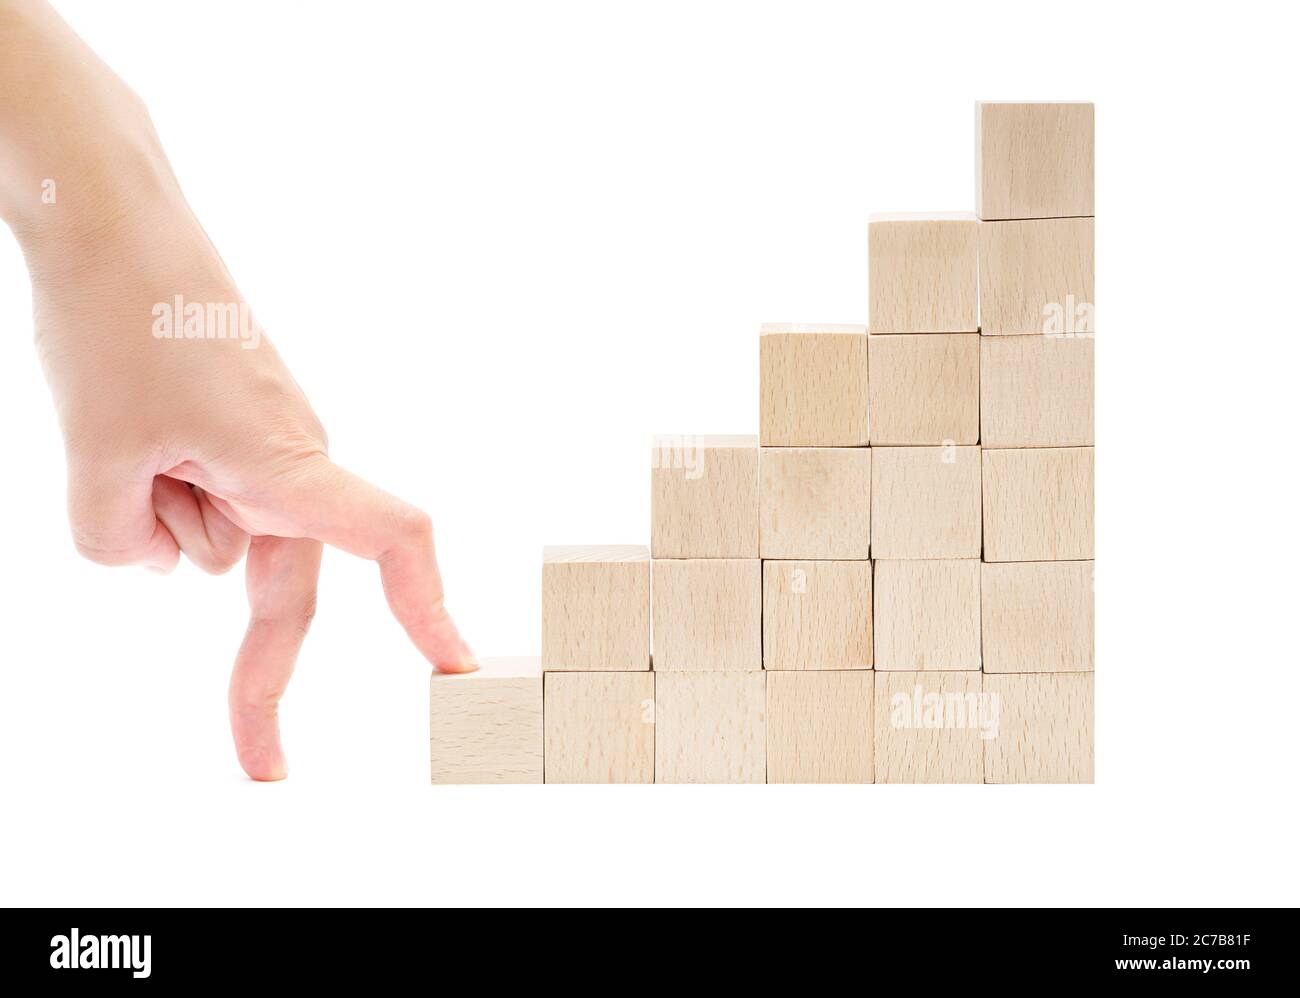 Die Handfinger beginnen die Treppe aus Holzspielzeugblöcken auf weißem Hintergrund zu klettern. Erster Schritt auf dem Karriereleiter-Konzept. Stockfoto